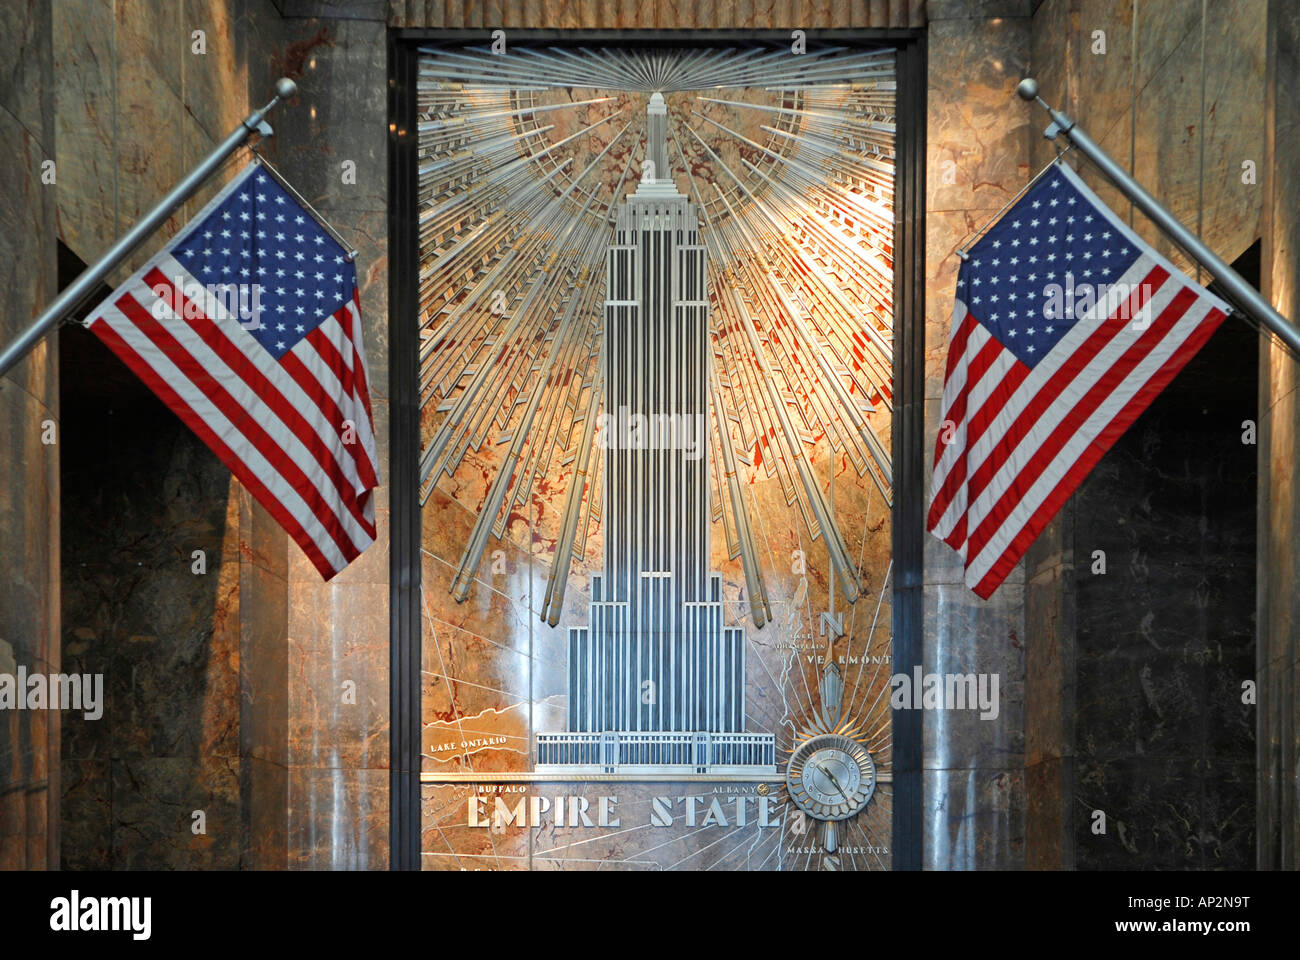 Entrée de l'Empire State Building, Manhattan, New York City, New York, USA Banque D'Images